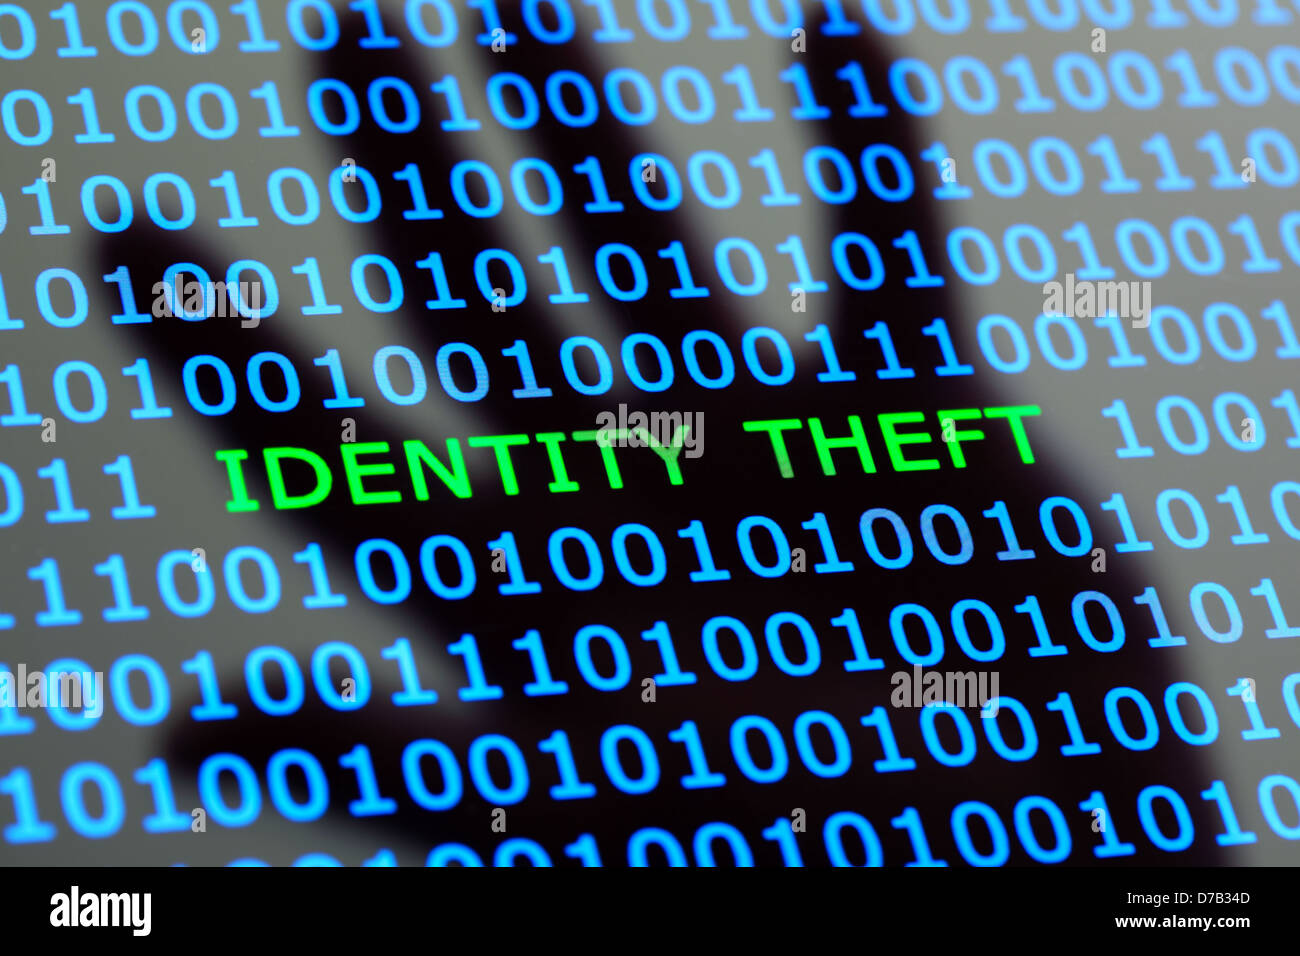 Identity theft online Stock Photo